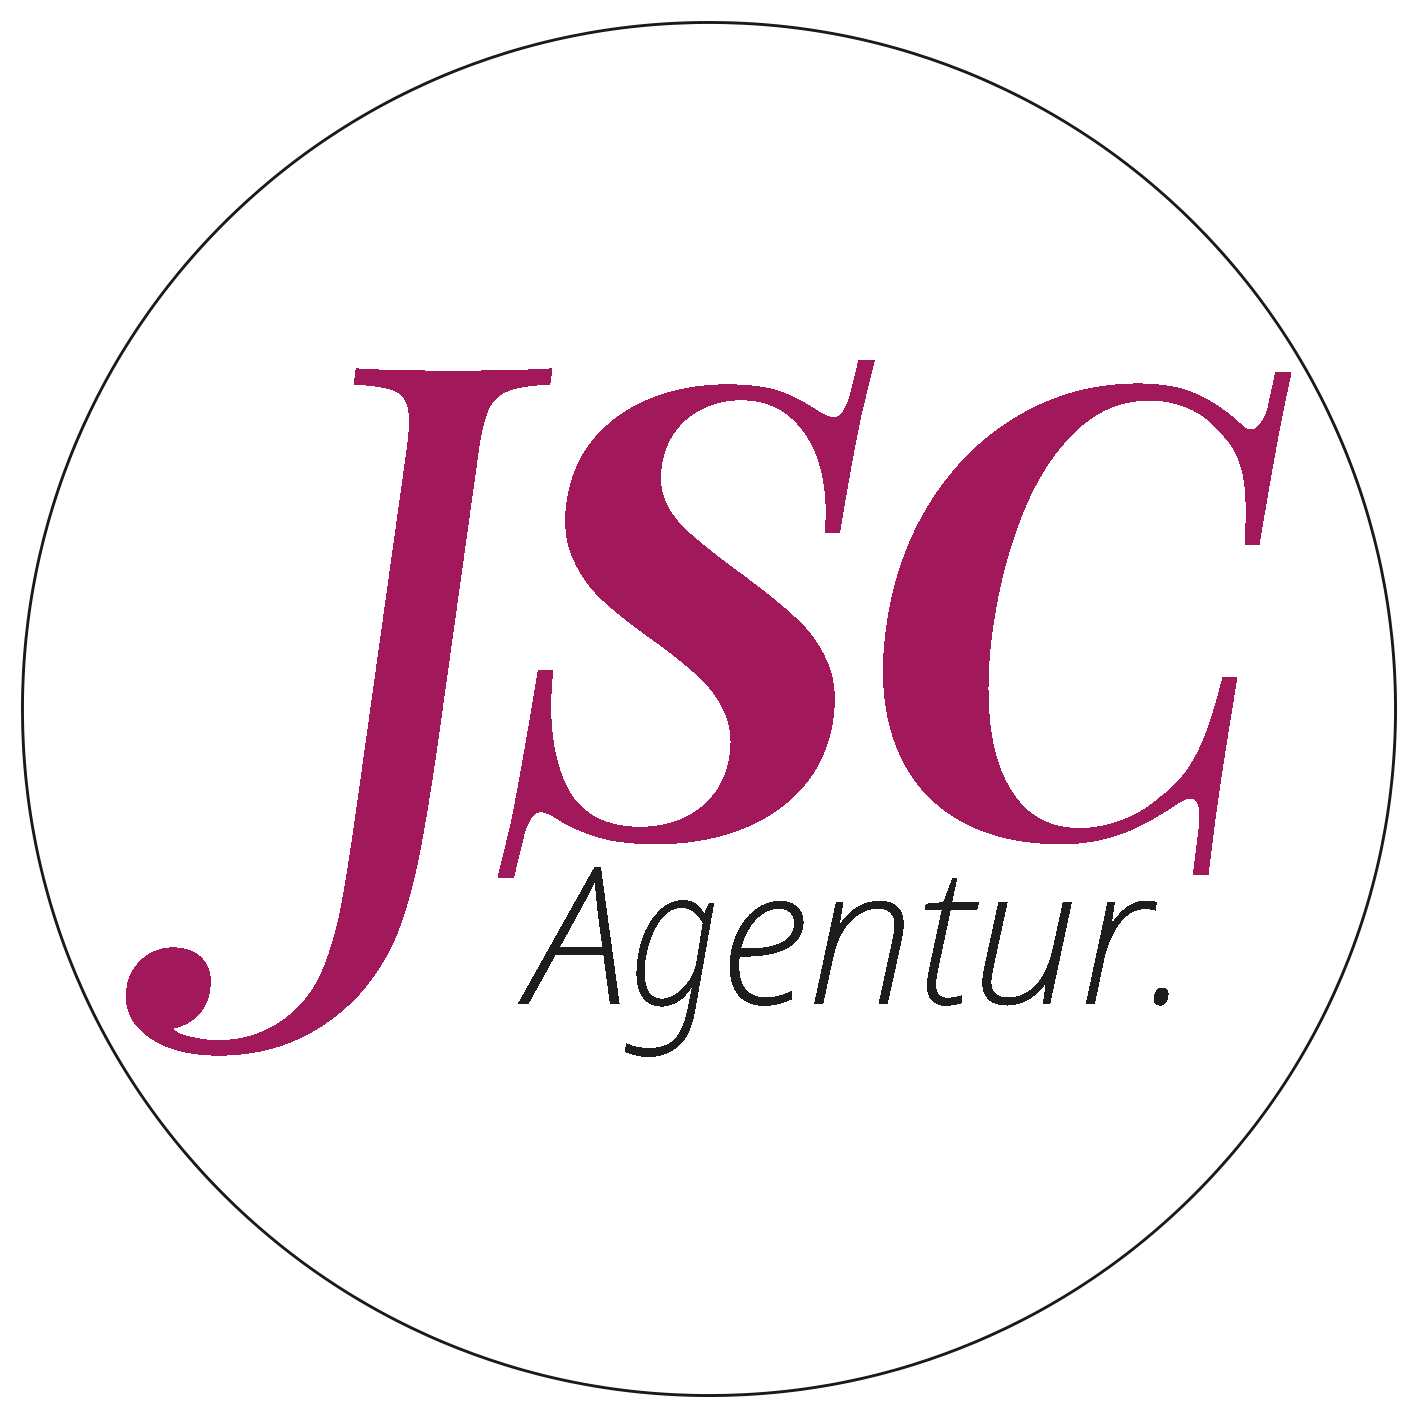 JSC Agentur